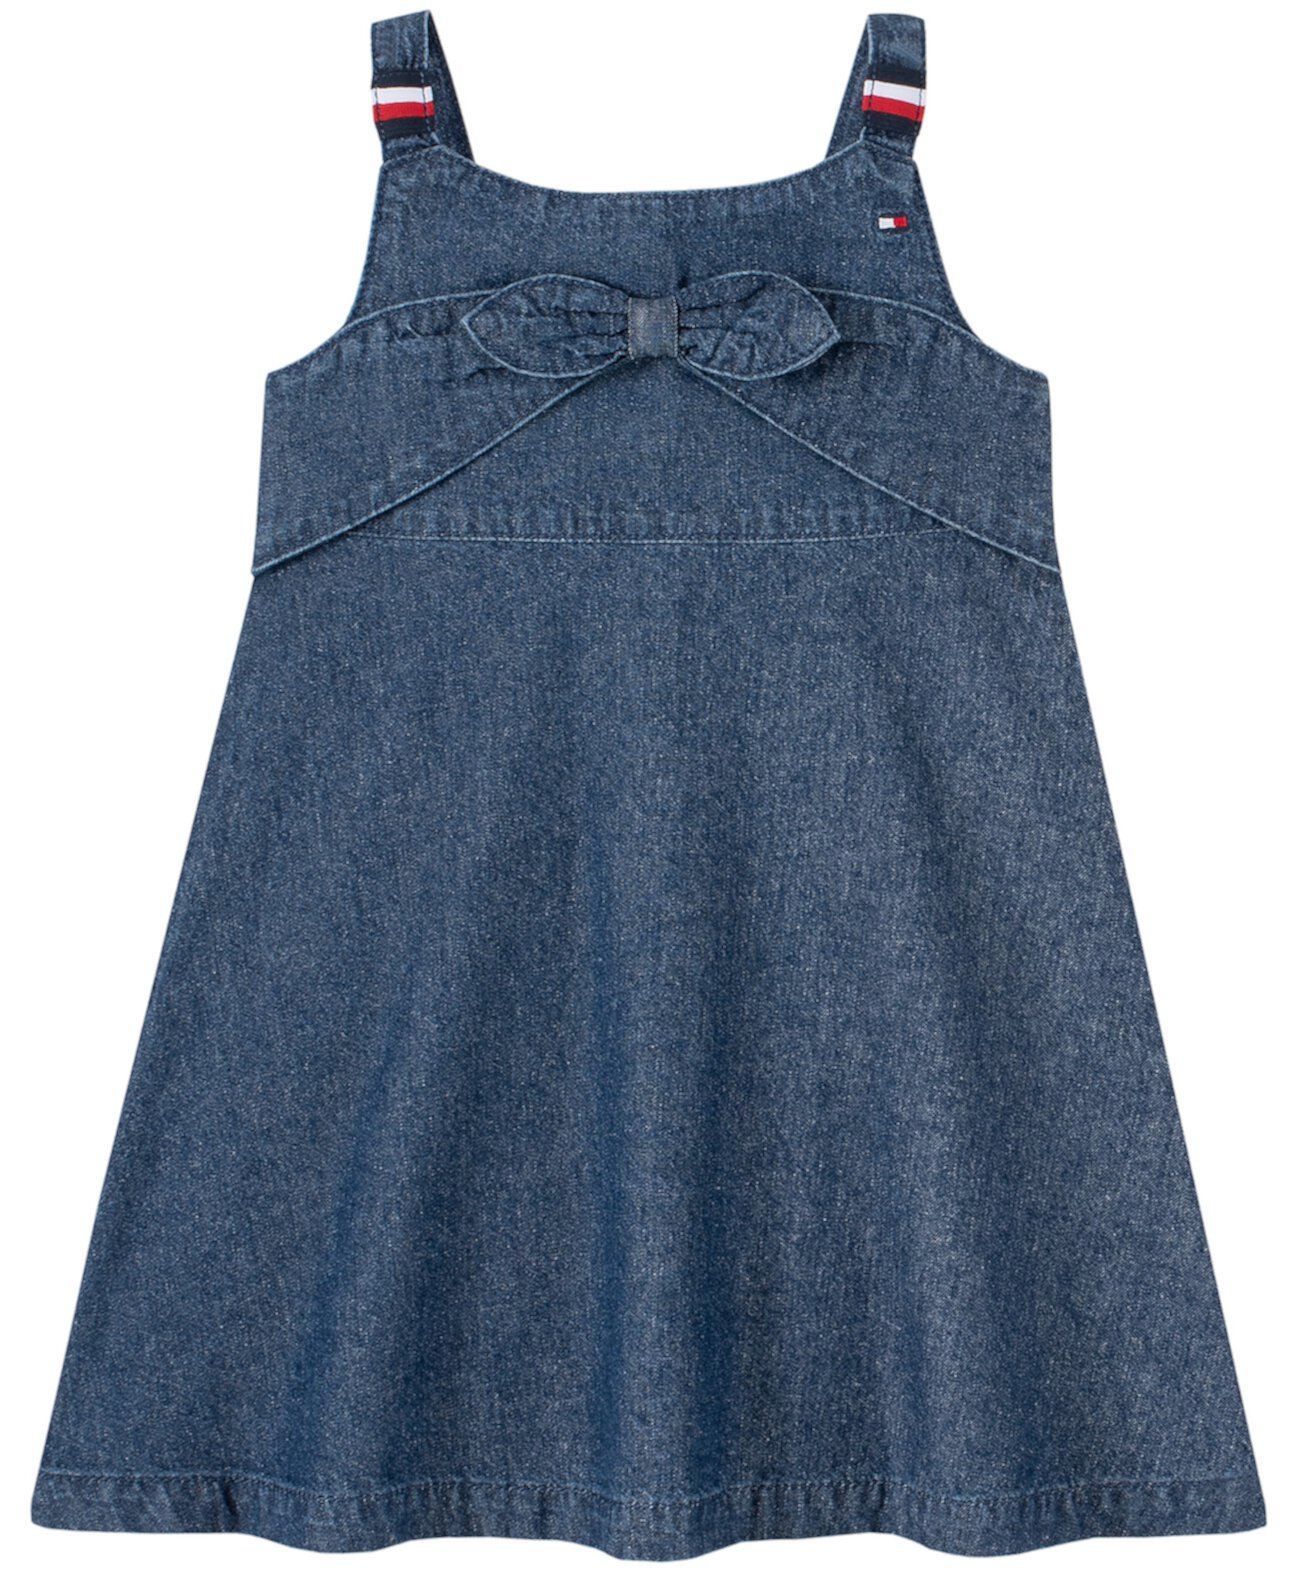 Фирменное джинсовое платье с завязками спереди для девочек Tommy Hilfiger